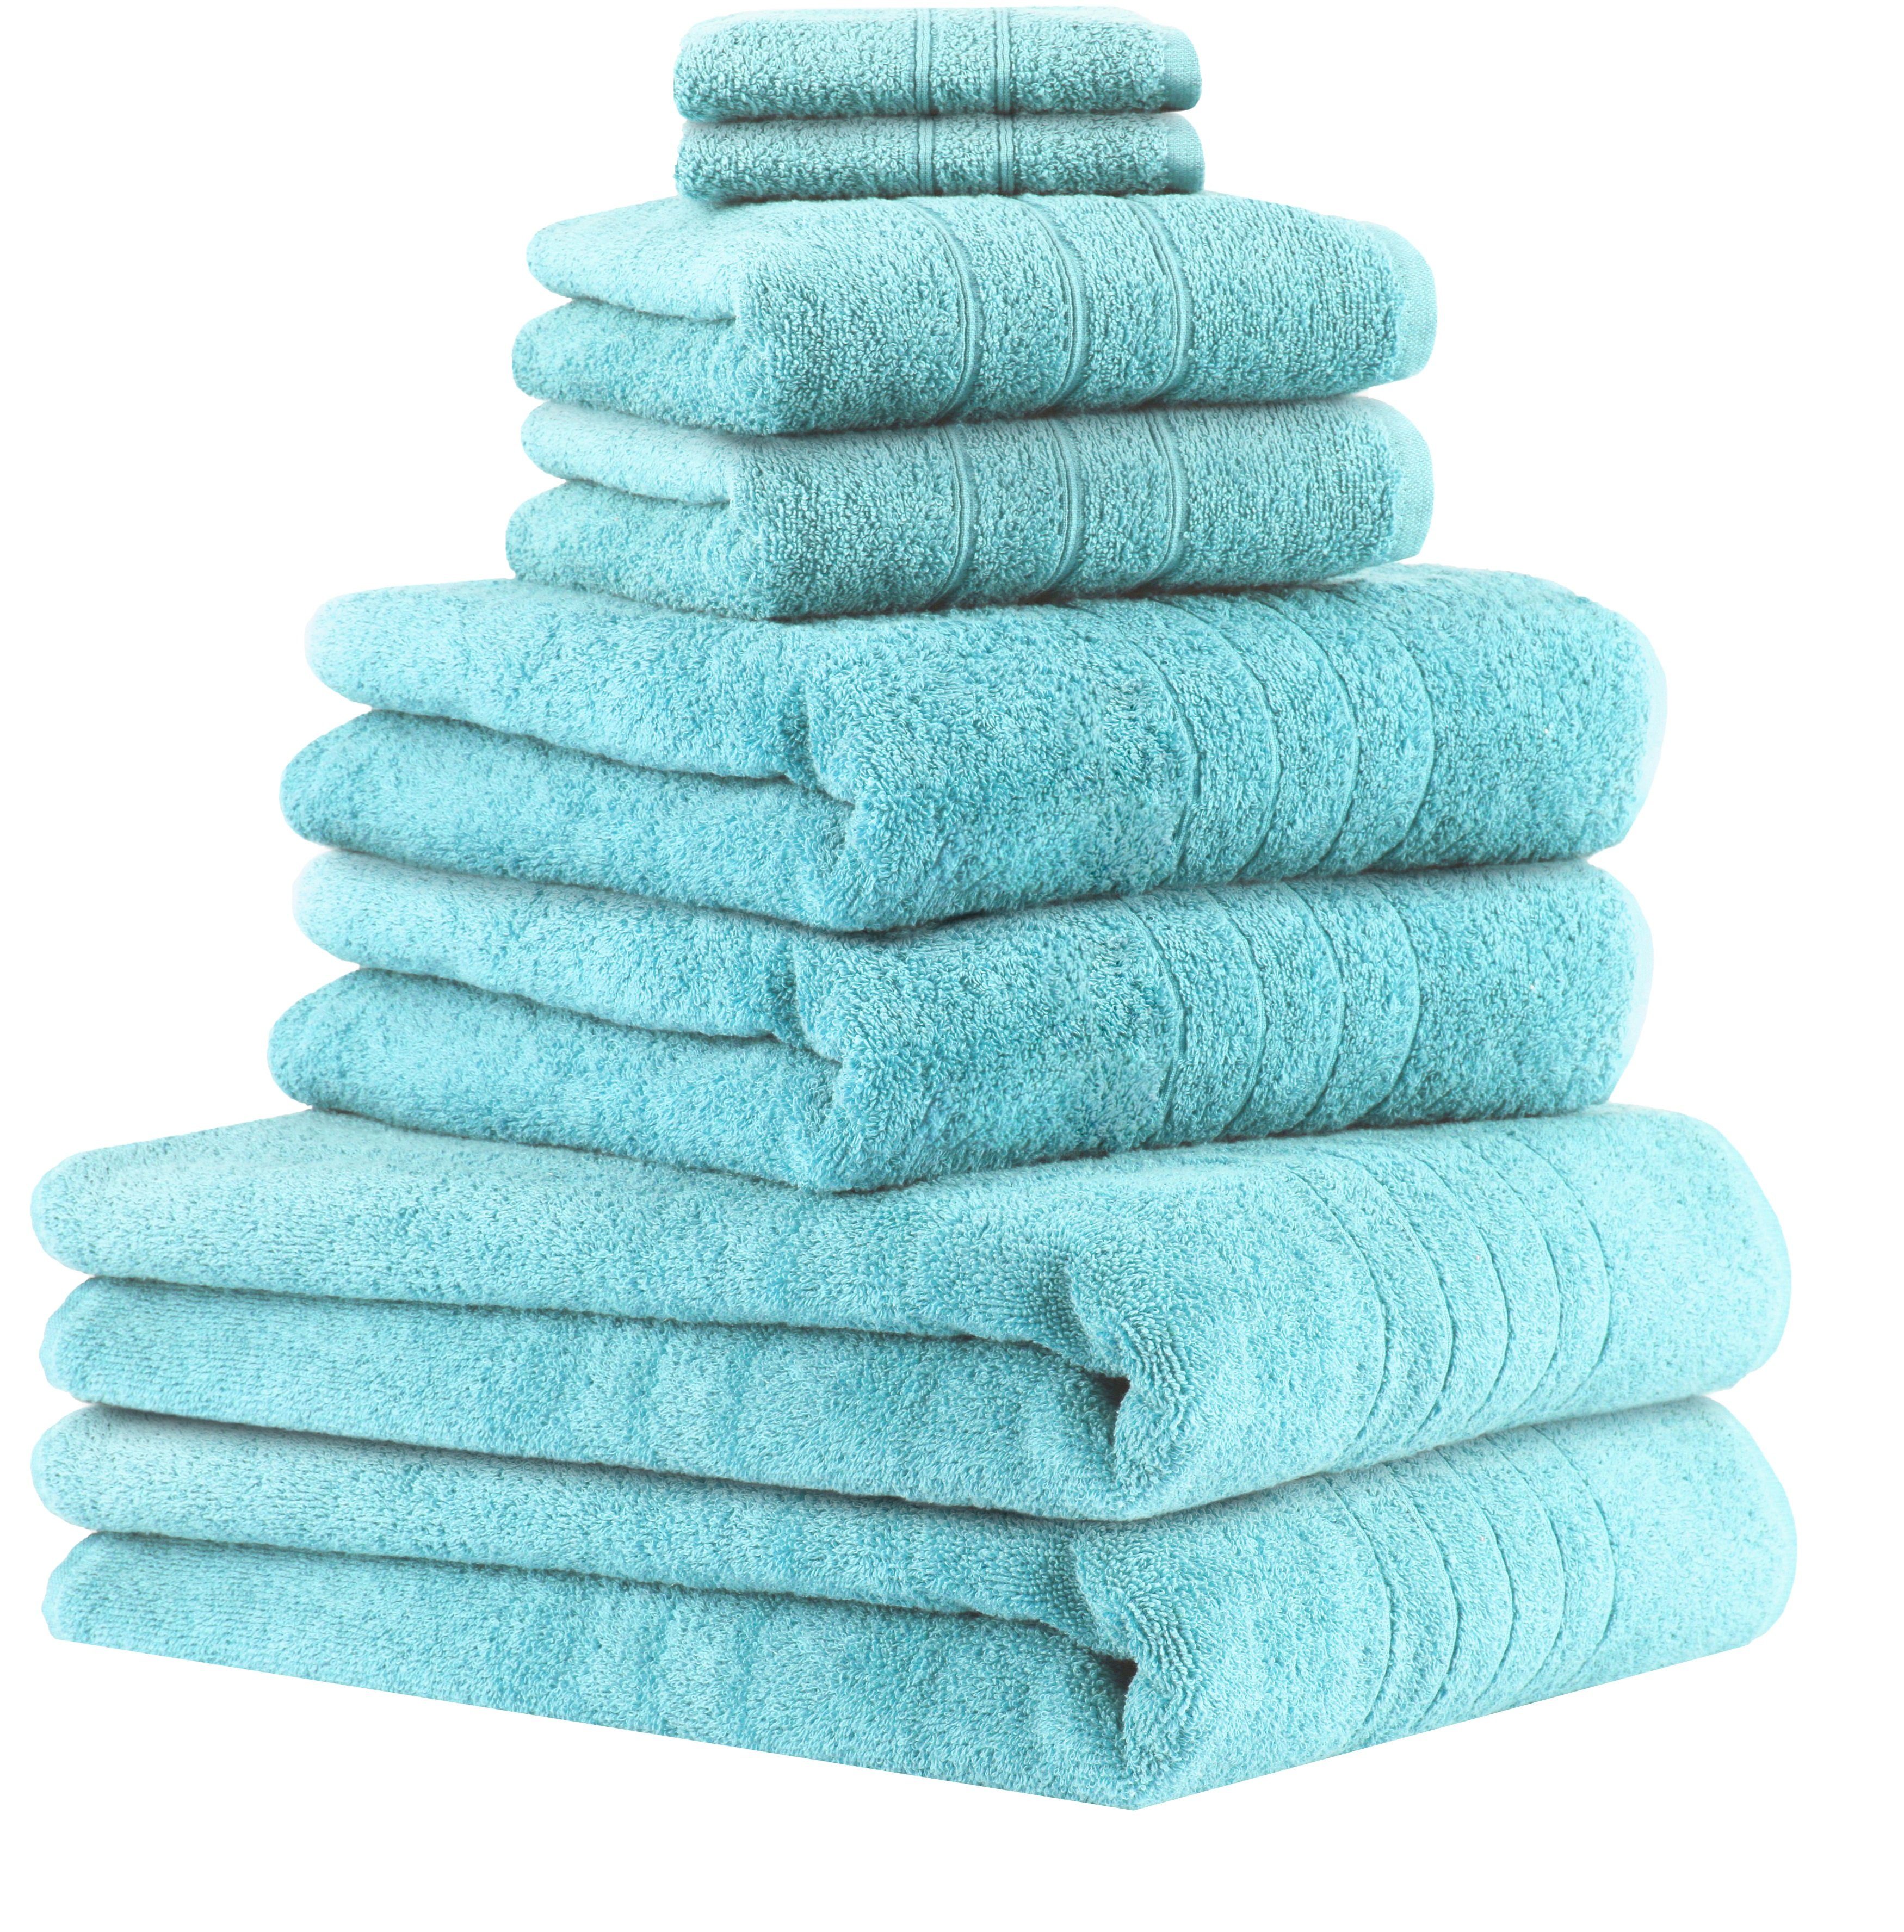 Betz Handtuch Set 8-TLG Handtuch-Set Deluxe 100% Baumwolle 2 Badetücher 2 Duschtücher 2 Handtücher 2 Seiftücher, 100% Baumwolle, (8-tlg) türkis